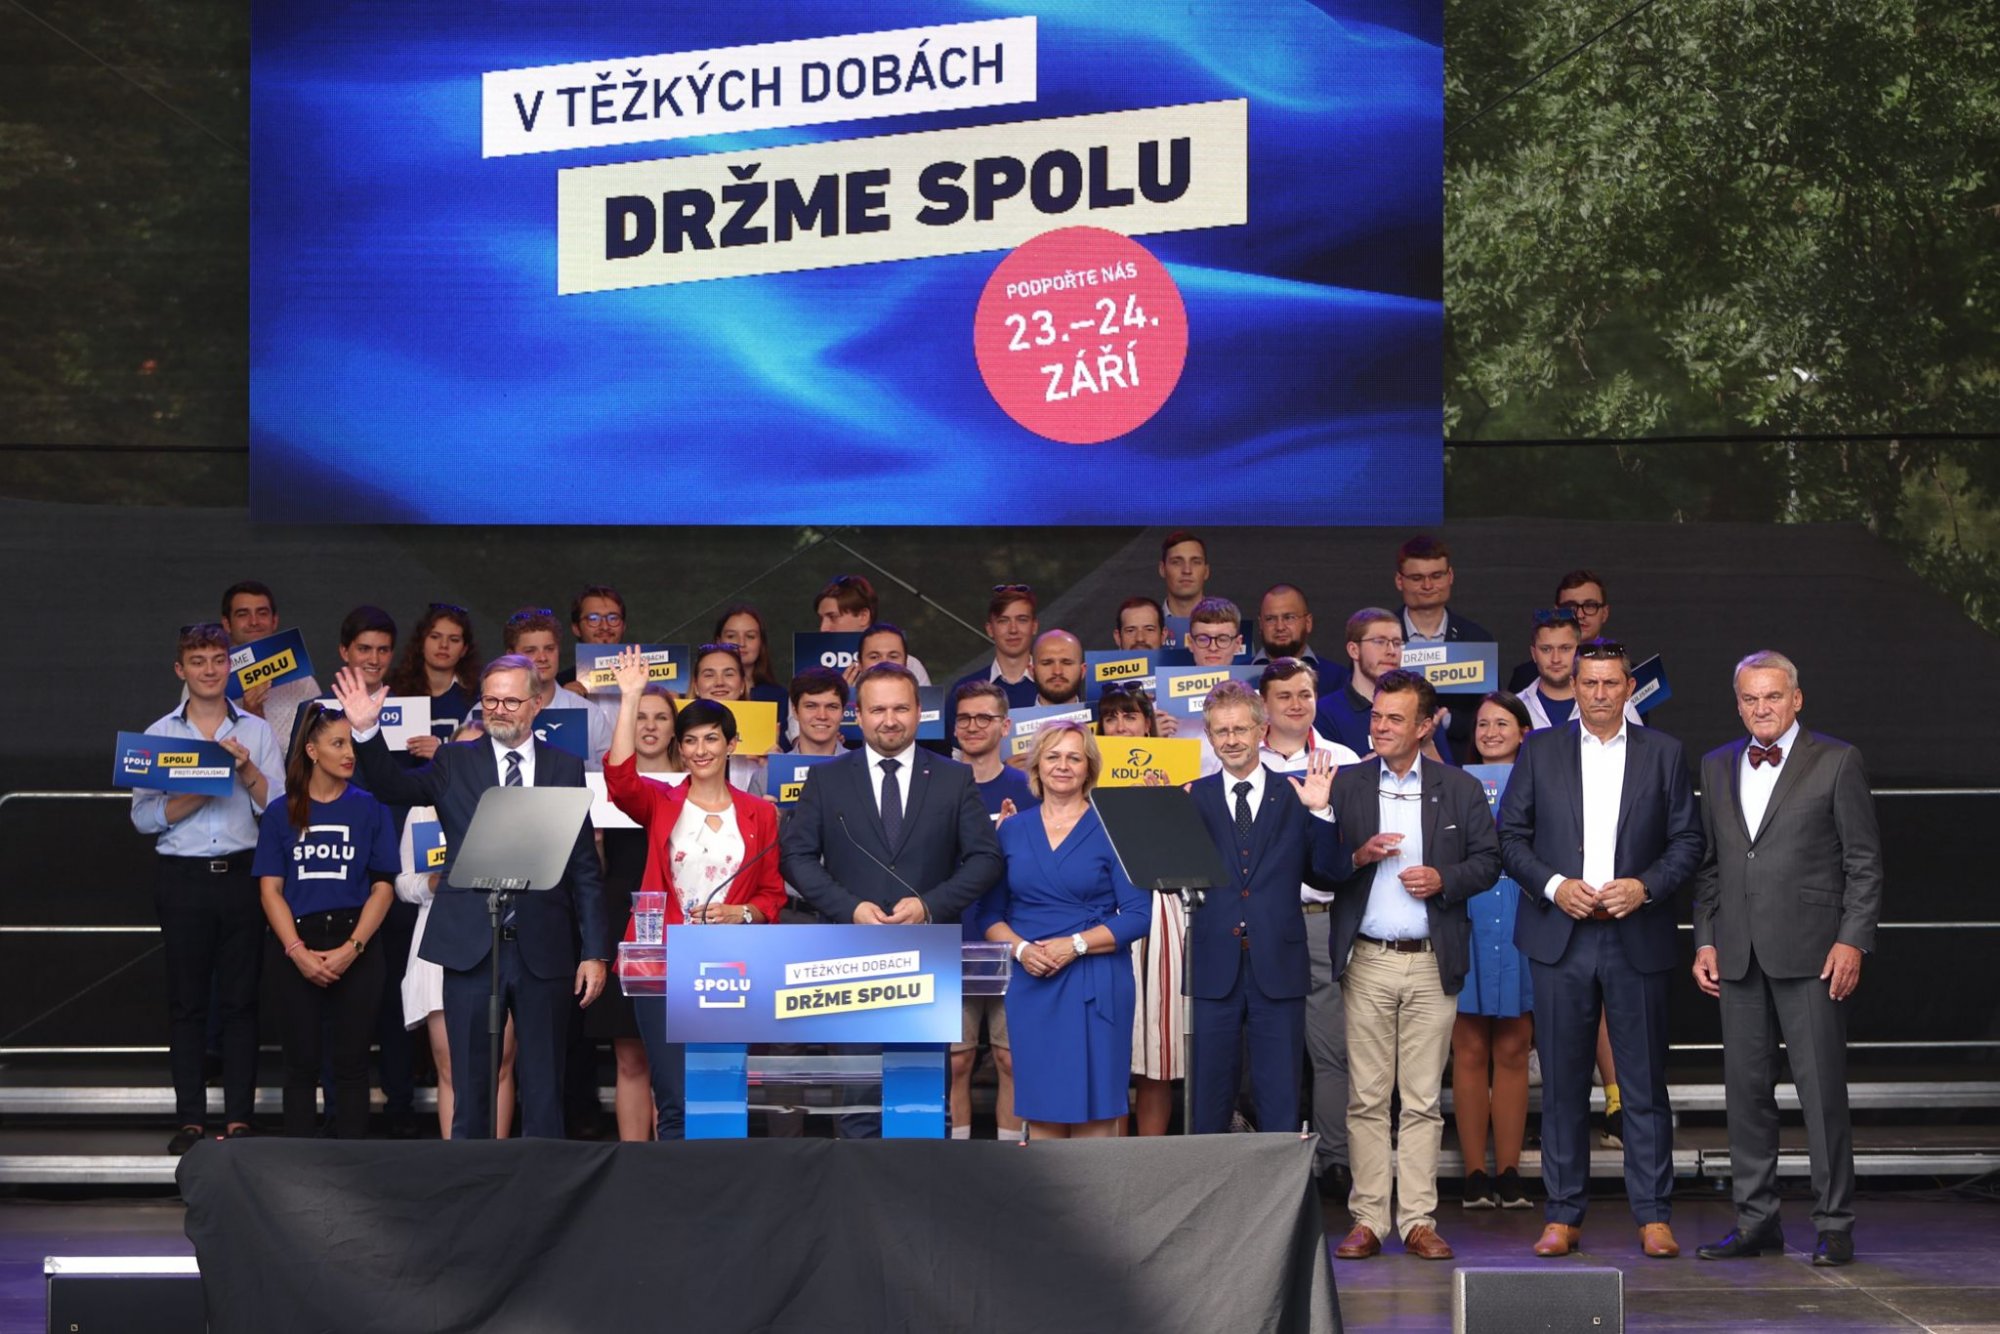 V těžkých časech držme SPOLU. Koalice ODS, KDU-ČSL a TOP 09 zahájila horkou fázi předvolební kampaně